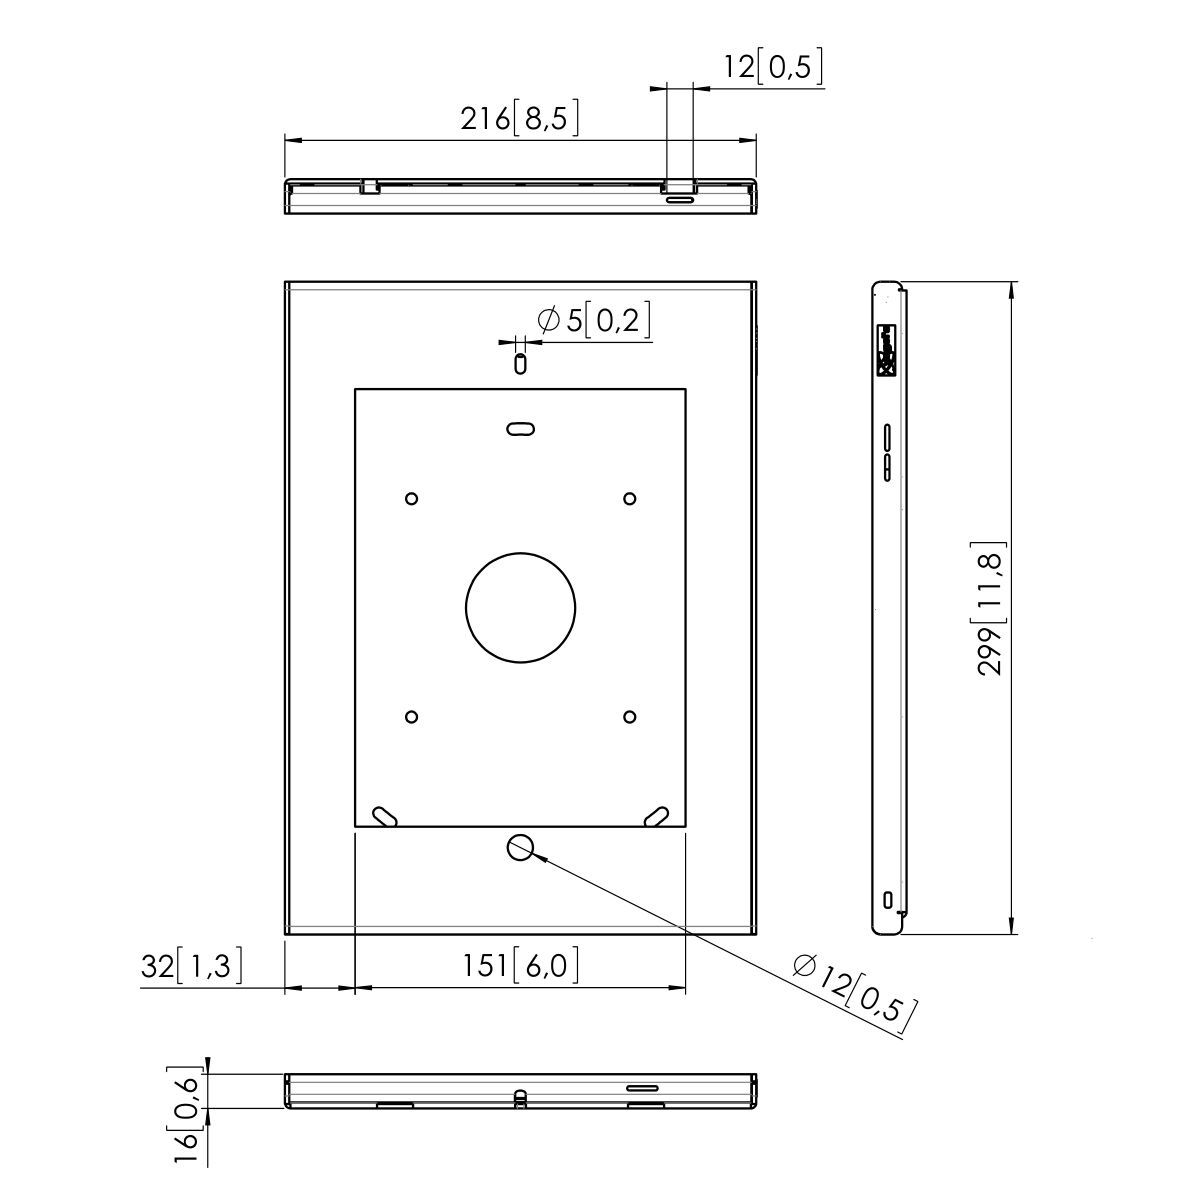 Vogel's PTS 1205 TabLock für iPad 2 / 3 / 4 HTZ - Dimensions